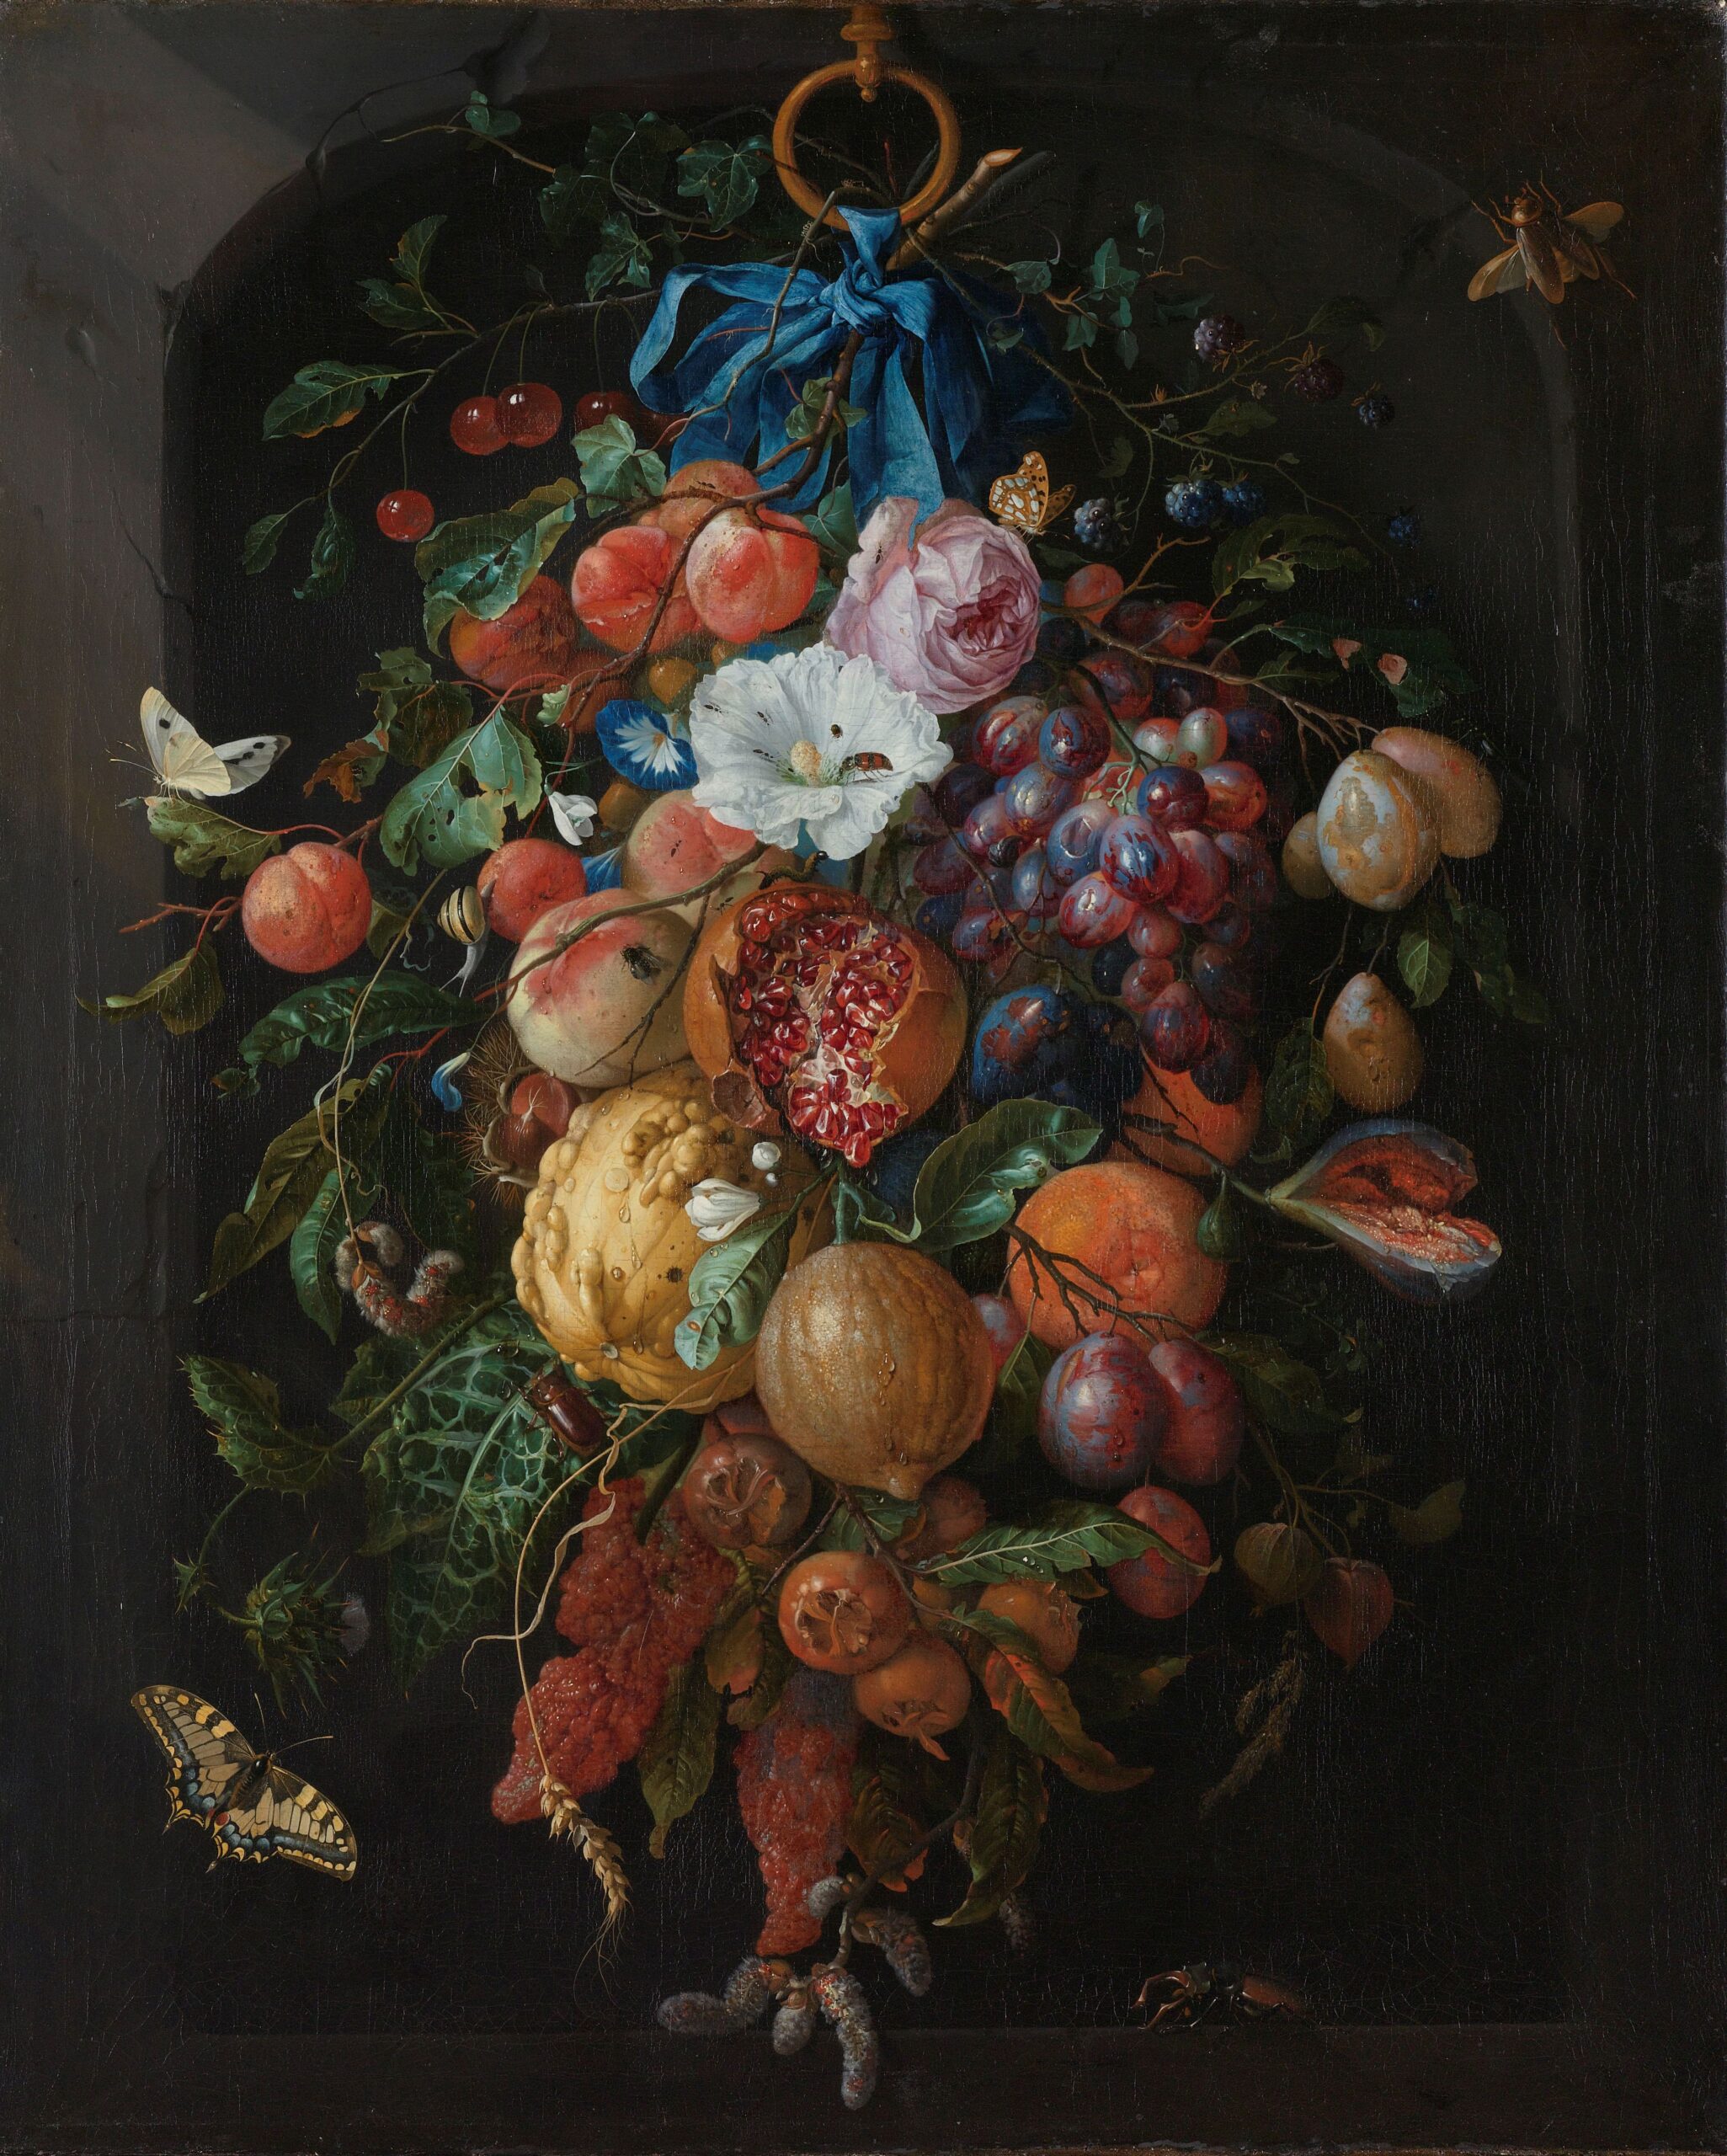 Festoon of Fruit and Flowers, Jan Davidsz. de Heem (1660 - 1670) Rijksmuseum Collection.